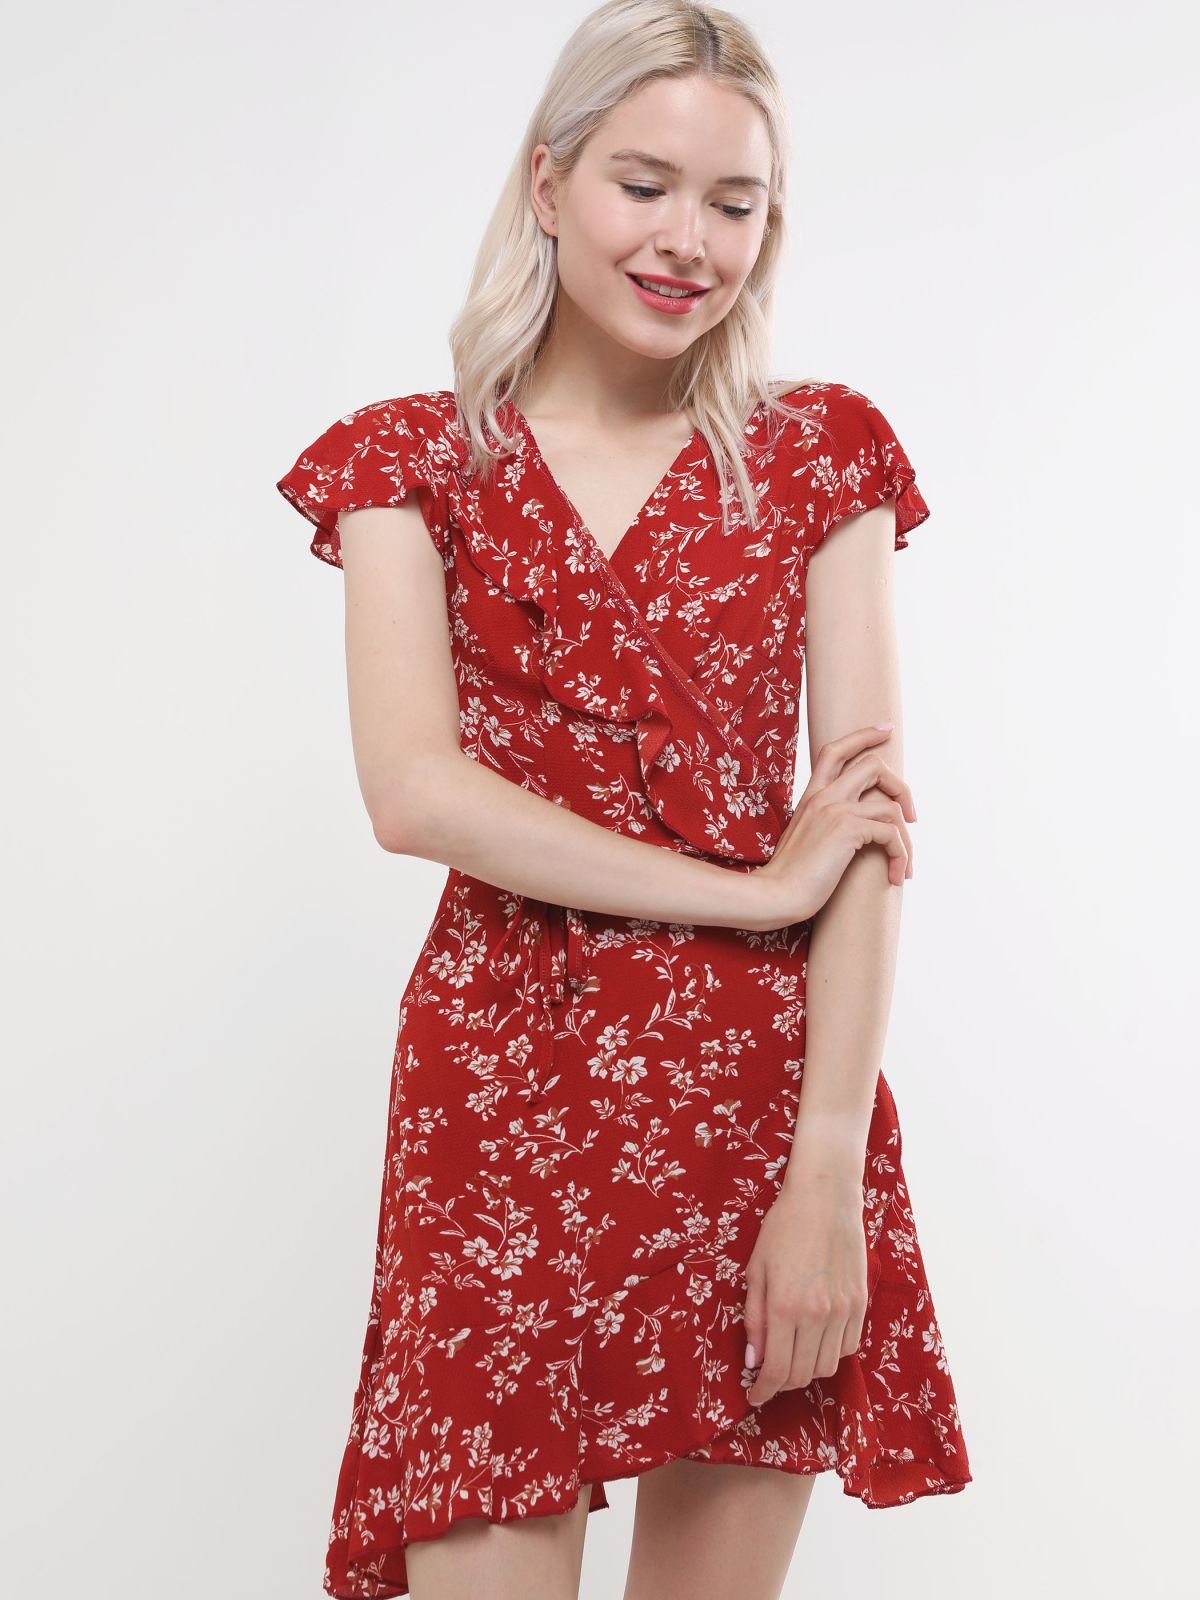  שמלת מעטפת מיני בהדפס פרחים של YANGA